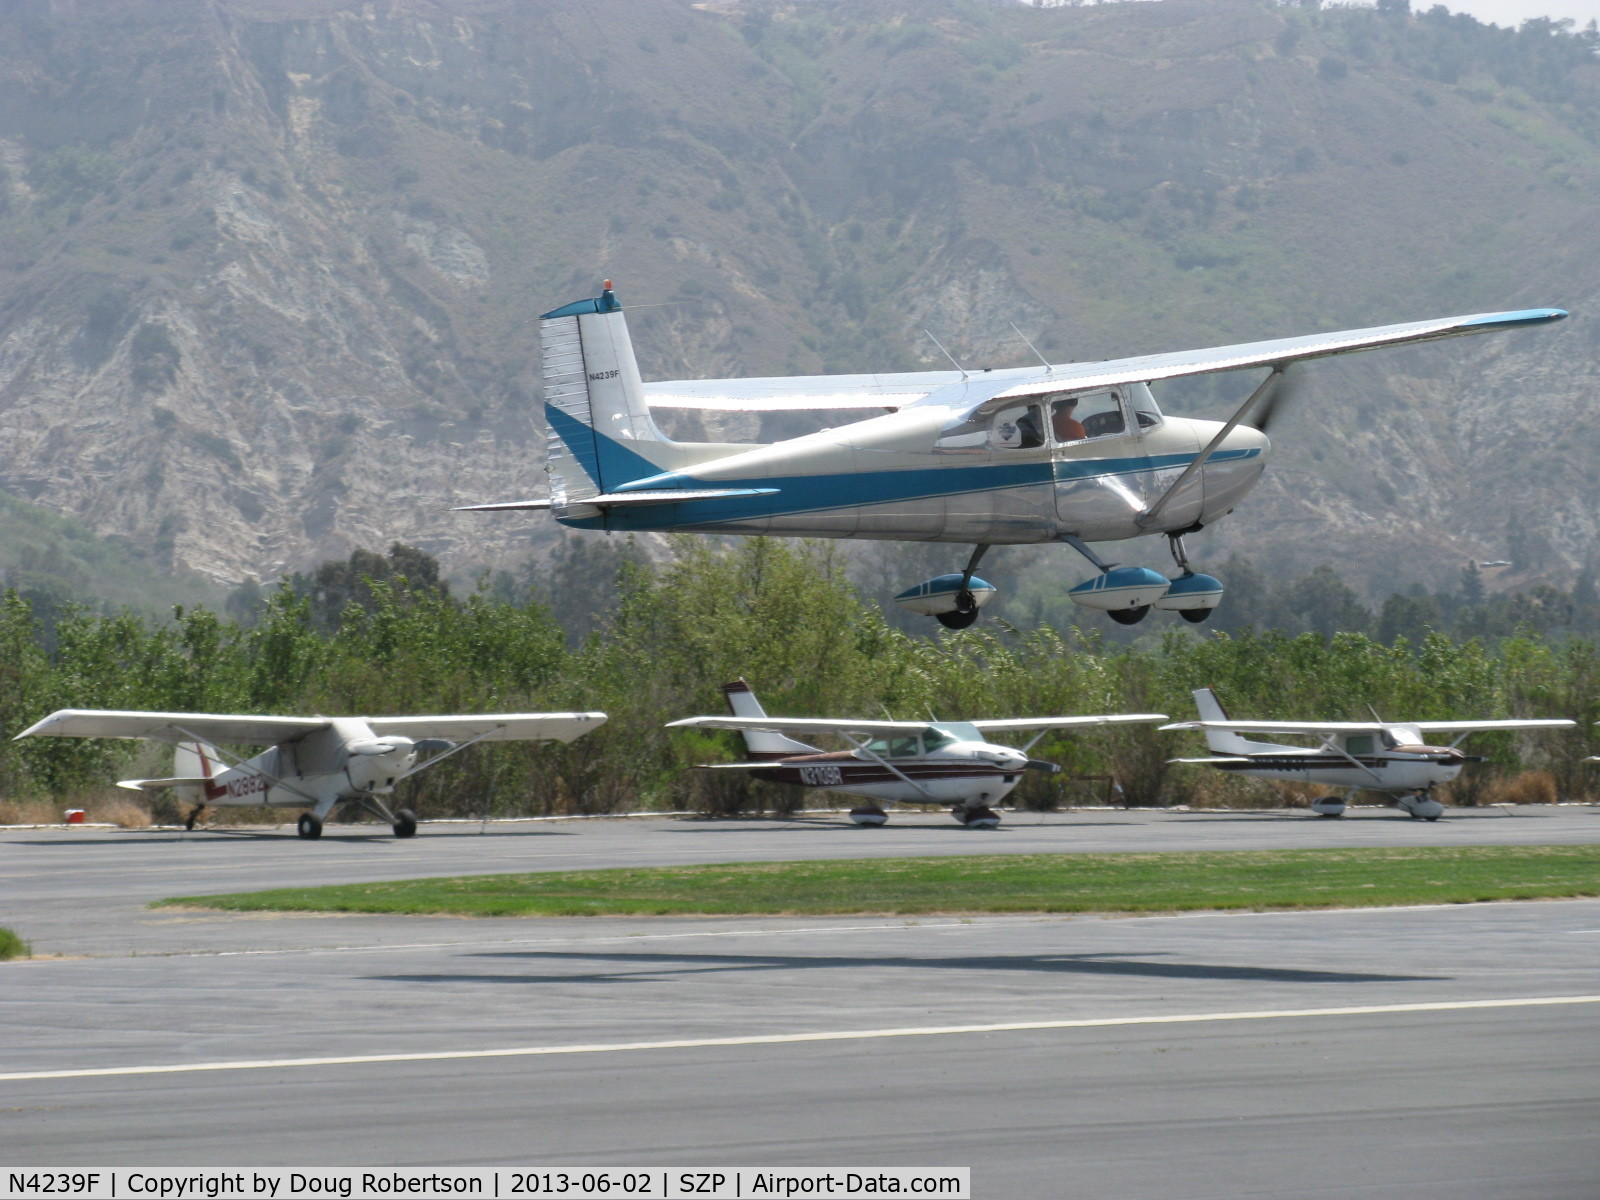 N4239F, 1958 Cessna 172 C/N 46139, 1958 Cessna 172, Continental O-300 145 Hp six cylinder, takeoff  Rwy 22